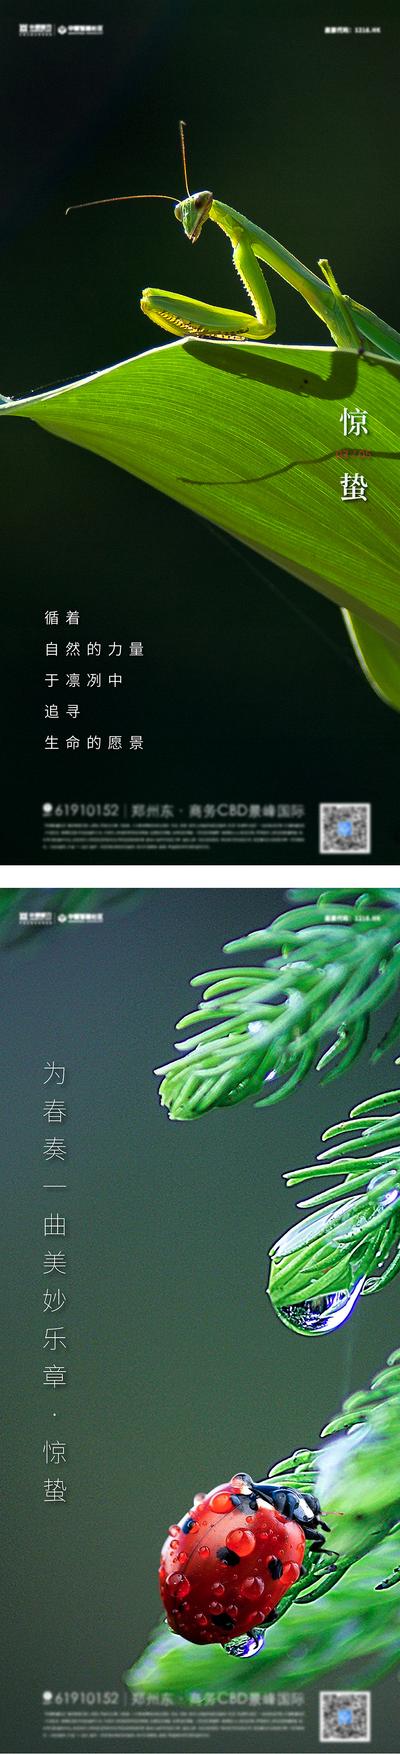 南门网 海报  二十四节气  惊蛰  昆虫 苏醒 瓢虫 系列